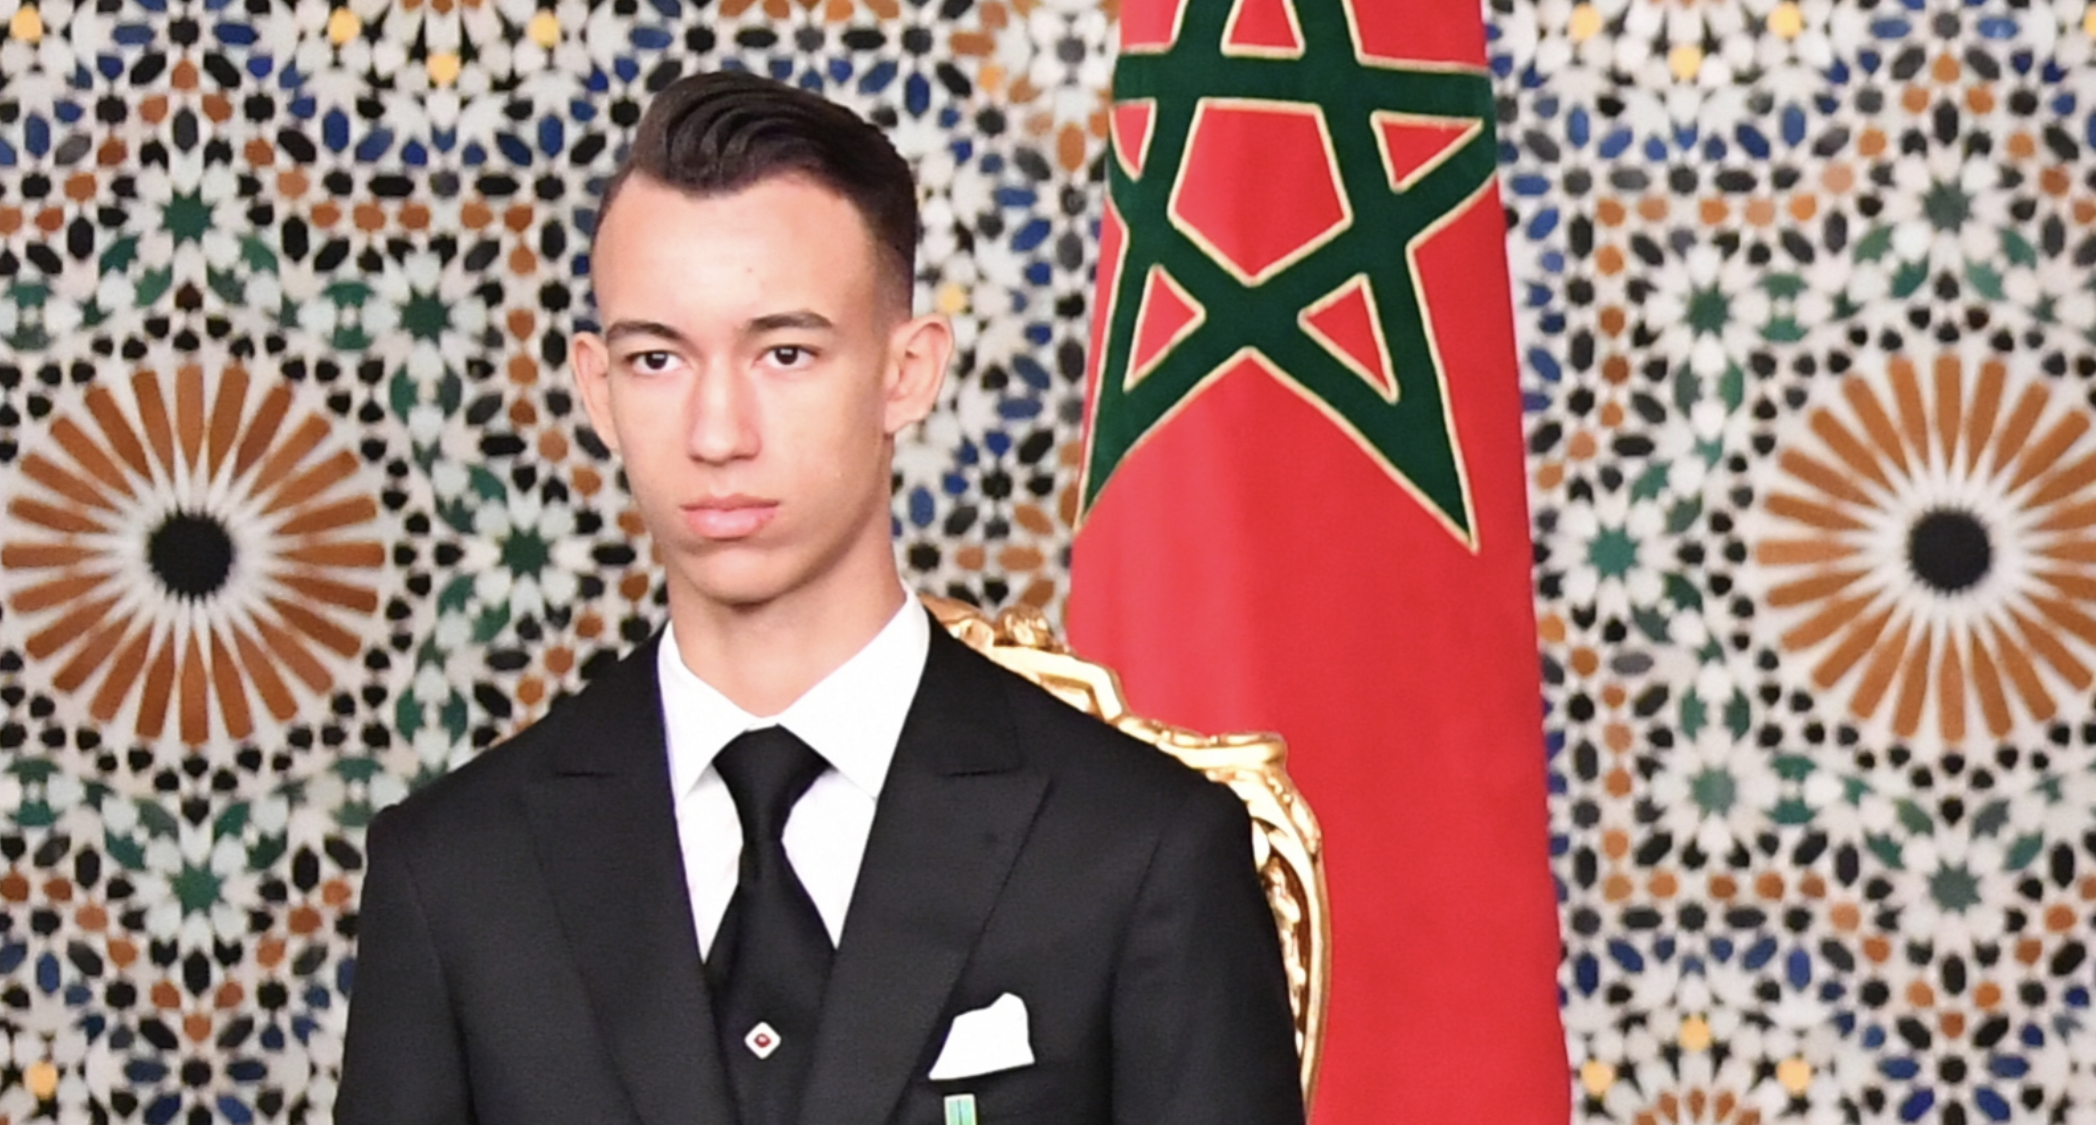 ولي العهد الأمير مولاي الحسن يلتحق بجامعة مغربية “كلية الحكامة والعلوم الإقتصادية والإجتماعية ببن جرير”